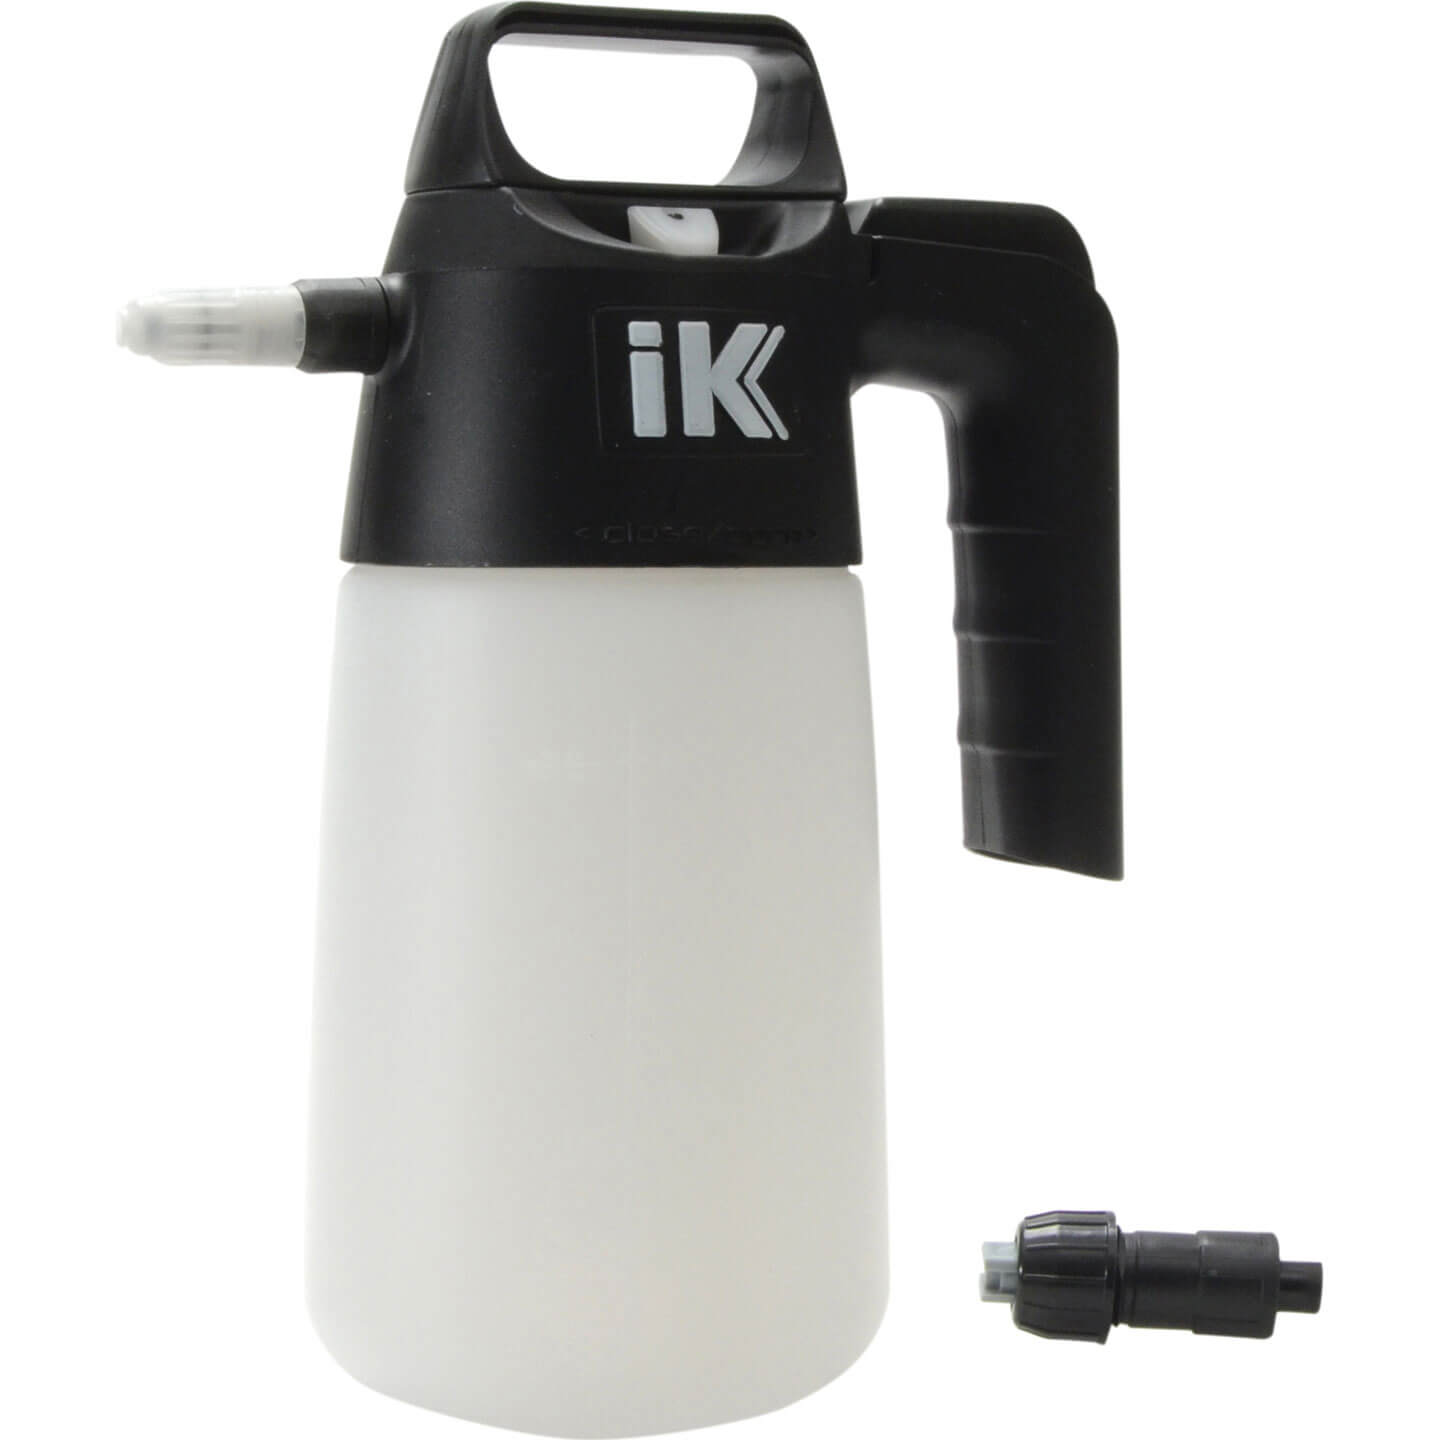 Image of Matabi IK1.5 Industrial Water Pressure Sprayer 1l